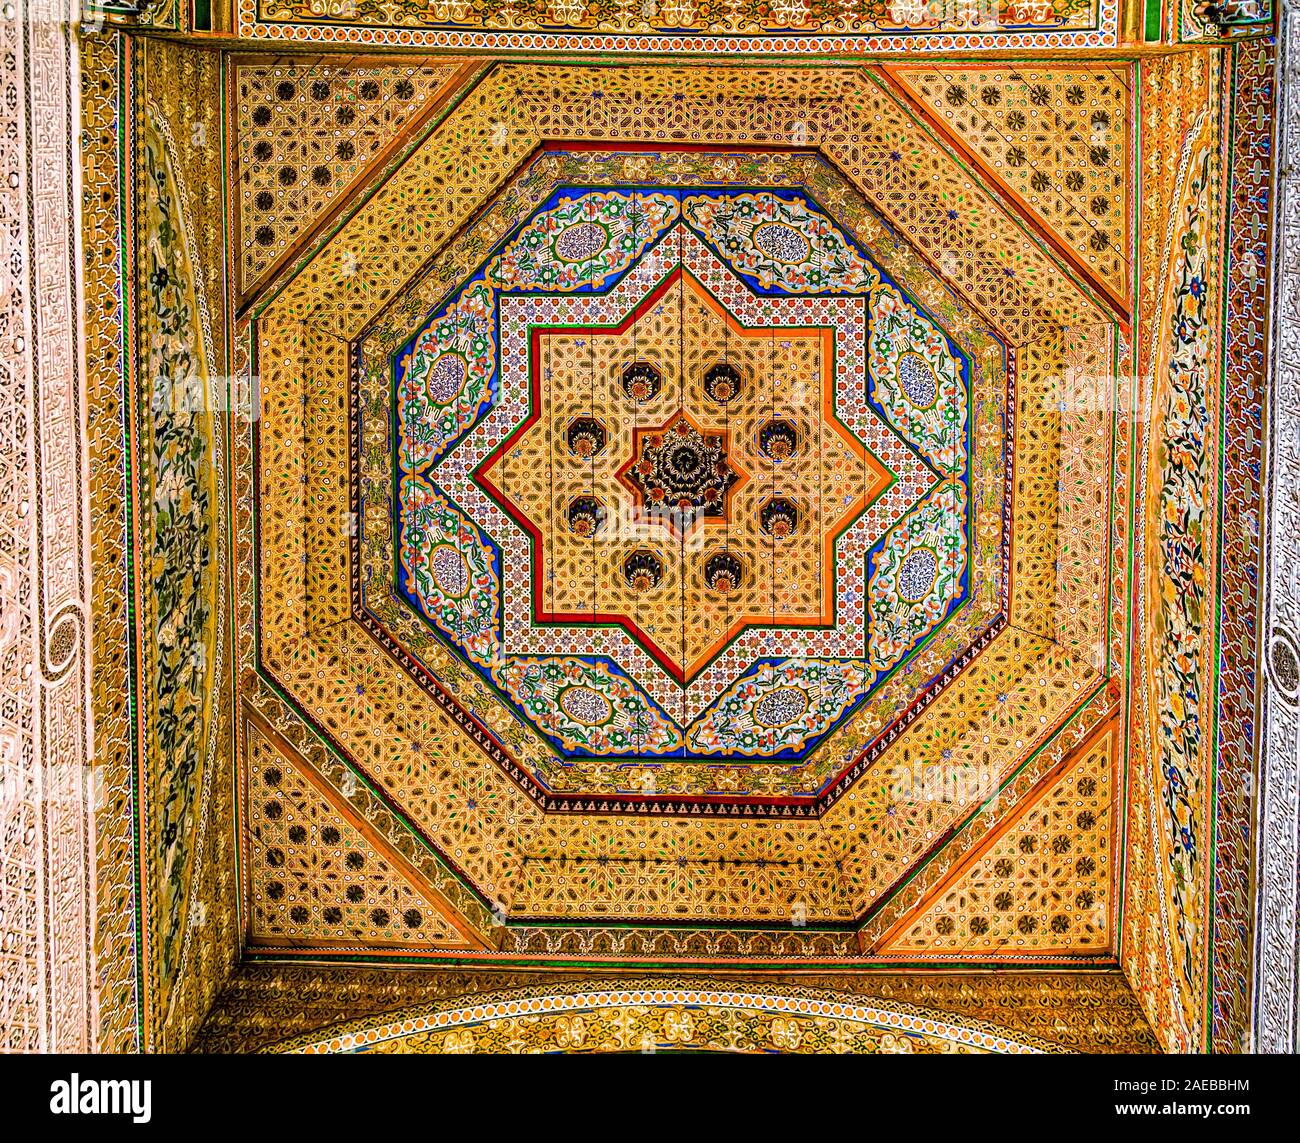 Richement sculptés, schéma traditionnel plafond peint du Palais Bahia. Combinant des éléments traditionnels marocains et islamique.Marrakech, Maroc. Banque D'Images